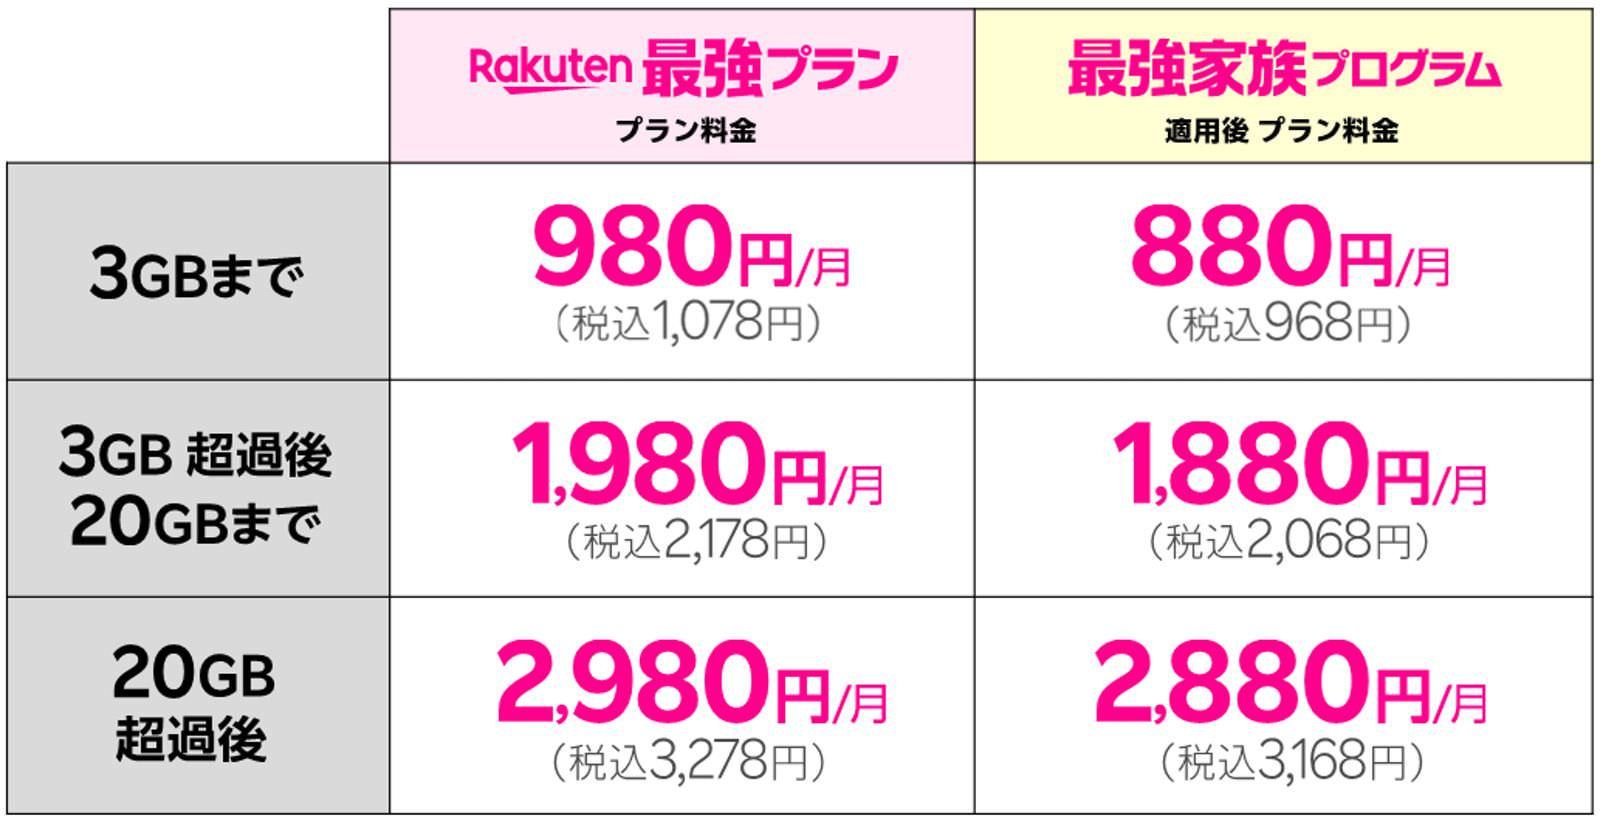 Rakuten-Saikyo-Family-Pricedown-03.jpg